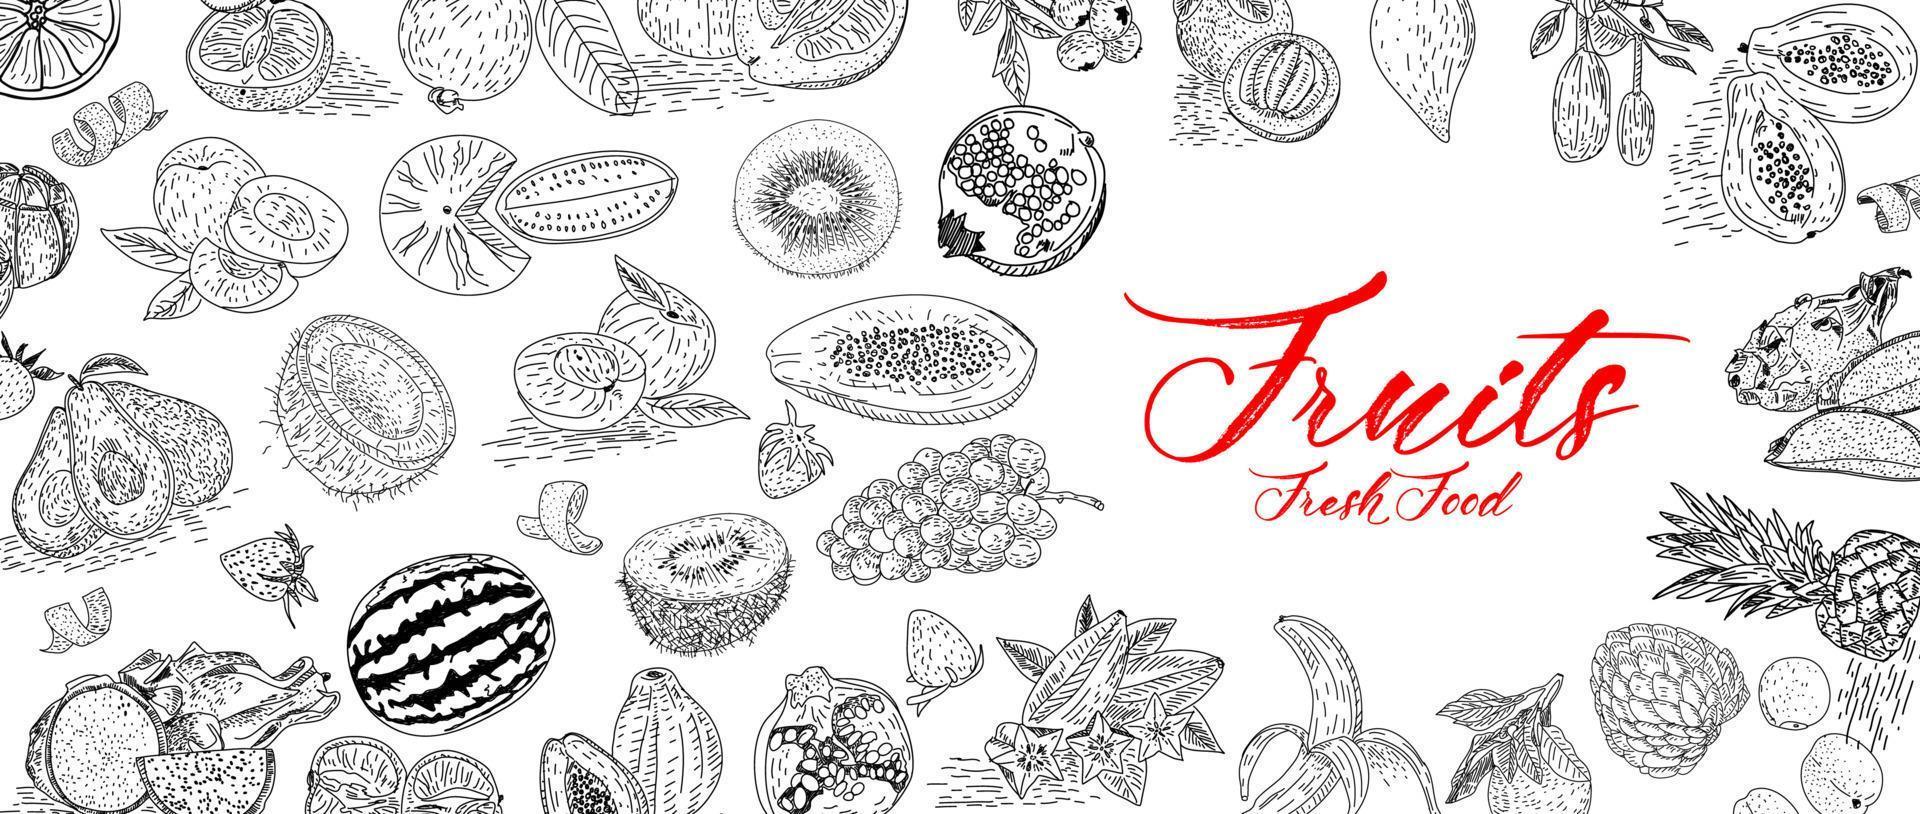 raccolta di frutta in stile disegnato a mano piatto, set di illustrazioni. vettore